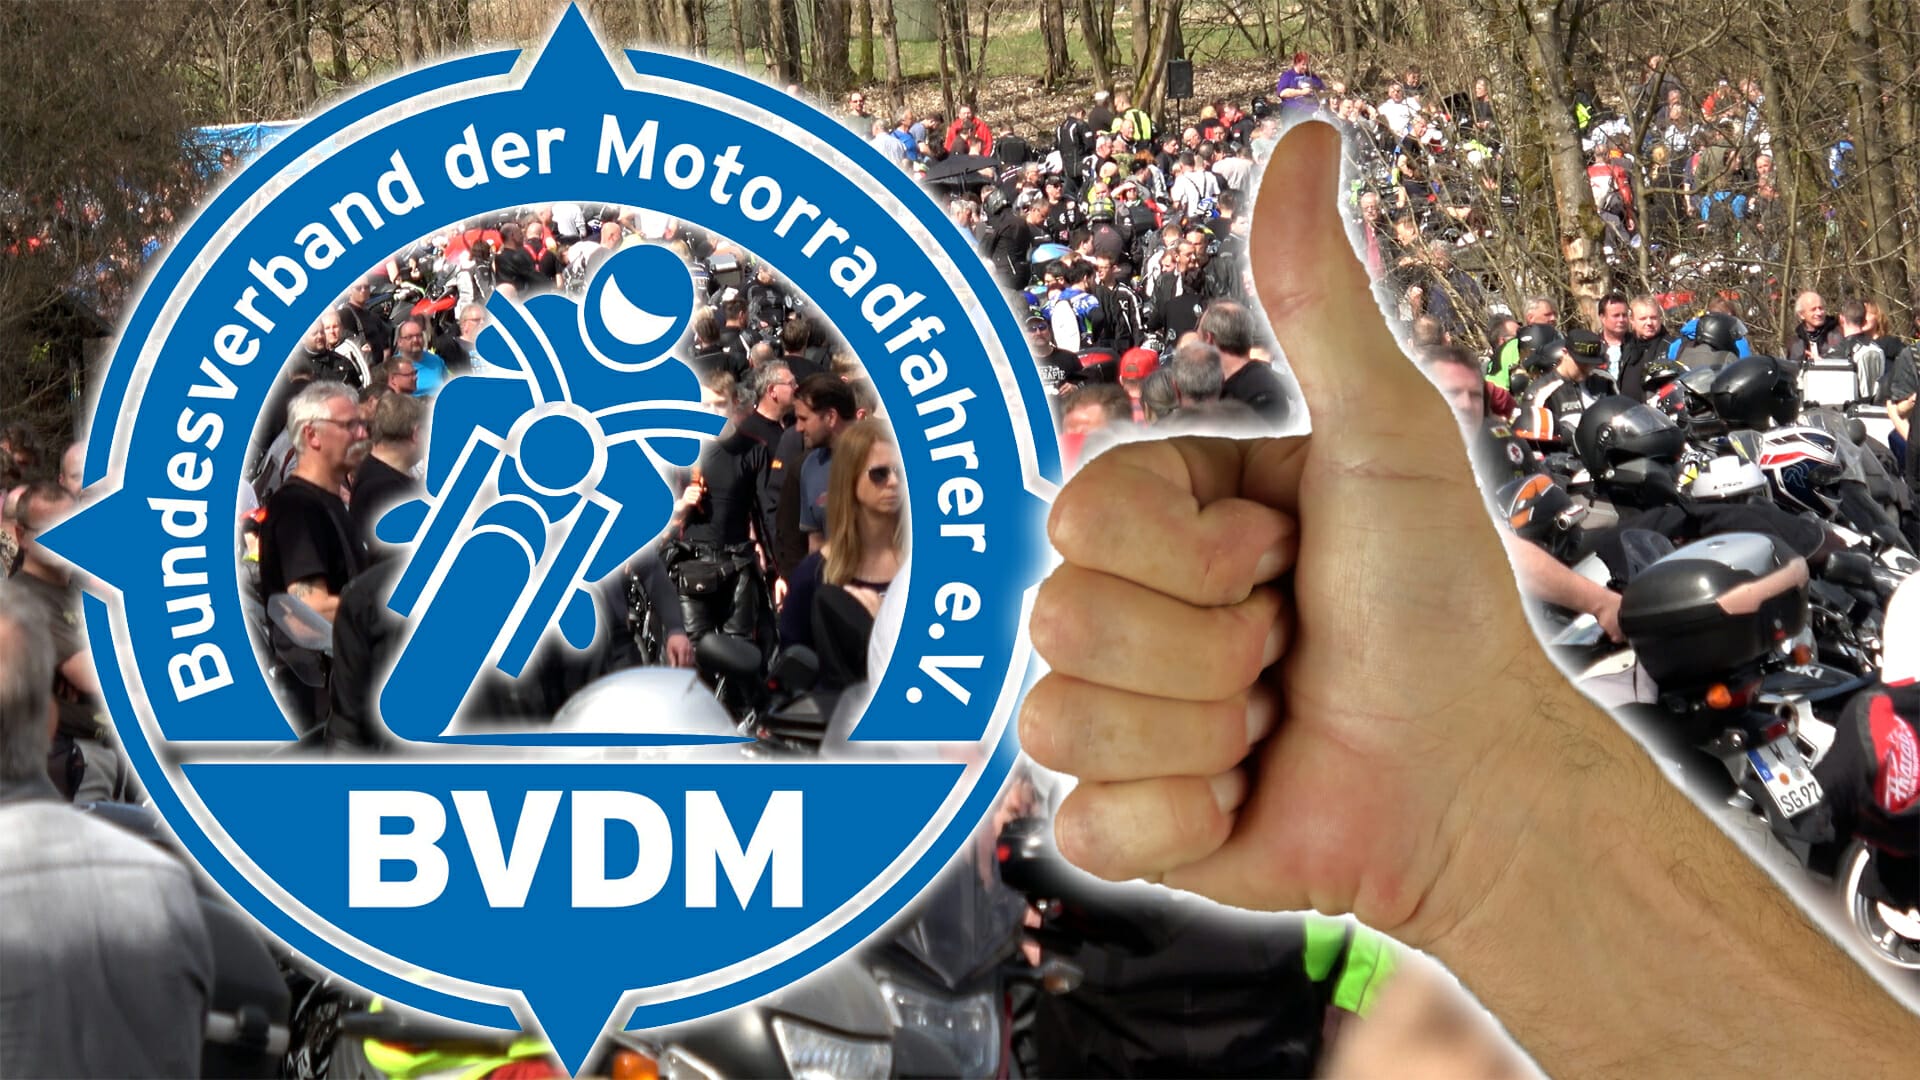 BVDM verlässt Silent Rider
- auch in der MOTORRAD NACHRICHTEN APP